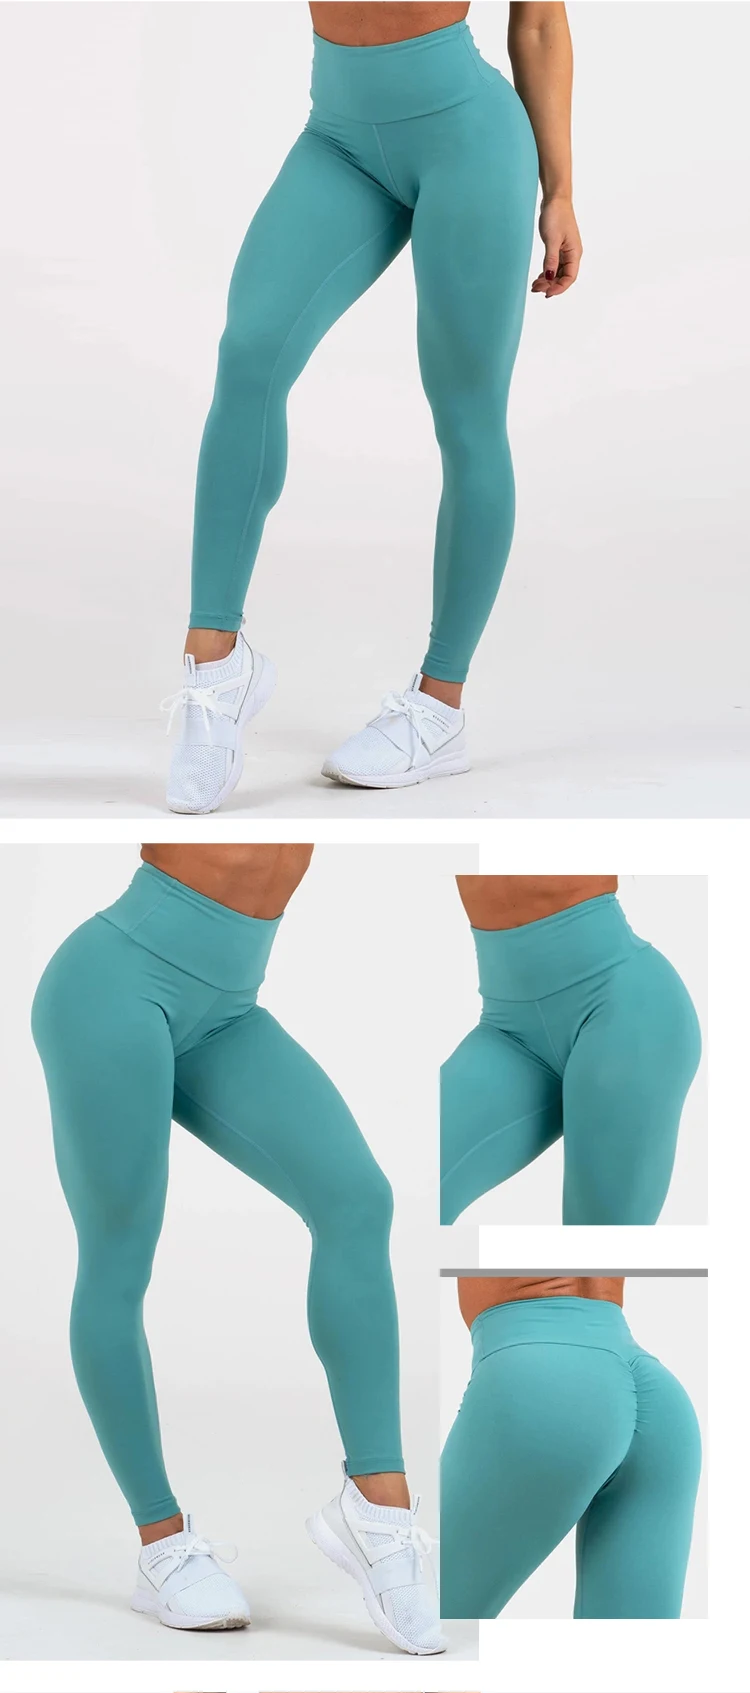 Try Sportswear Scrunch Bum Booty Ladies Nude Leggings Butt Lift Yoga ...